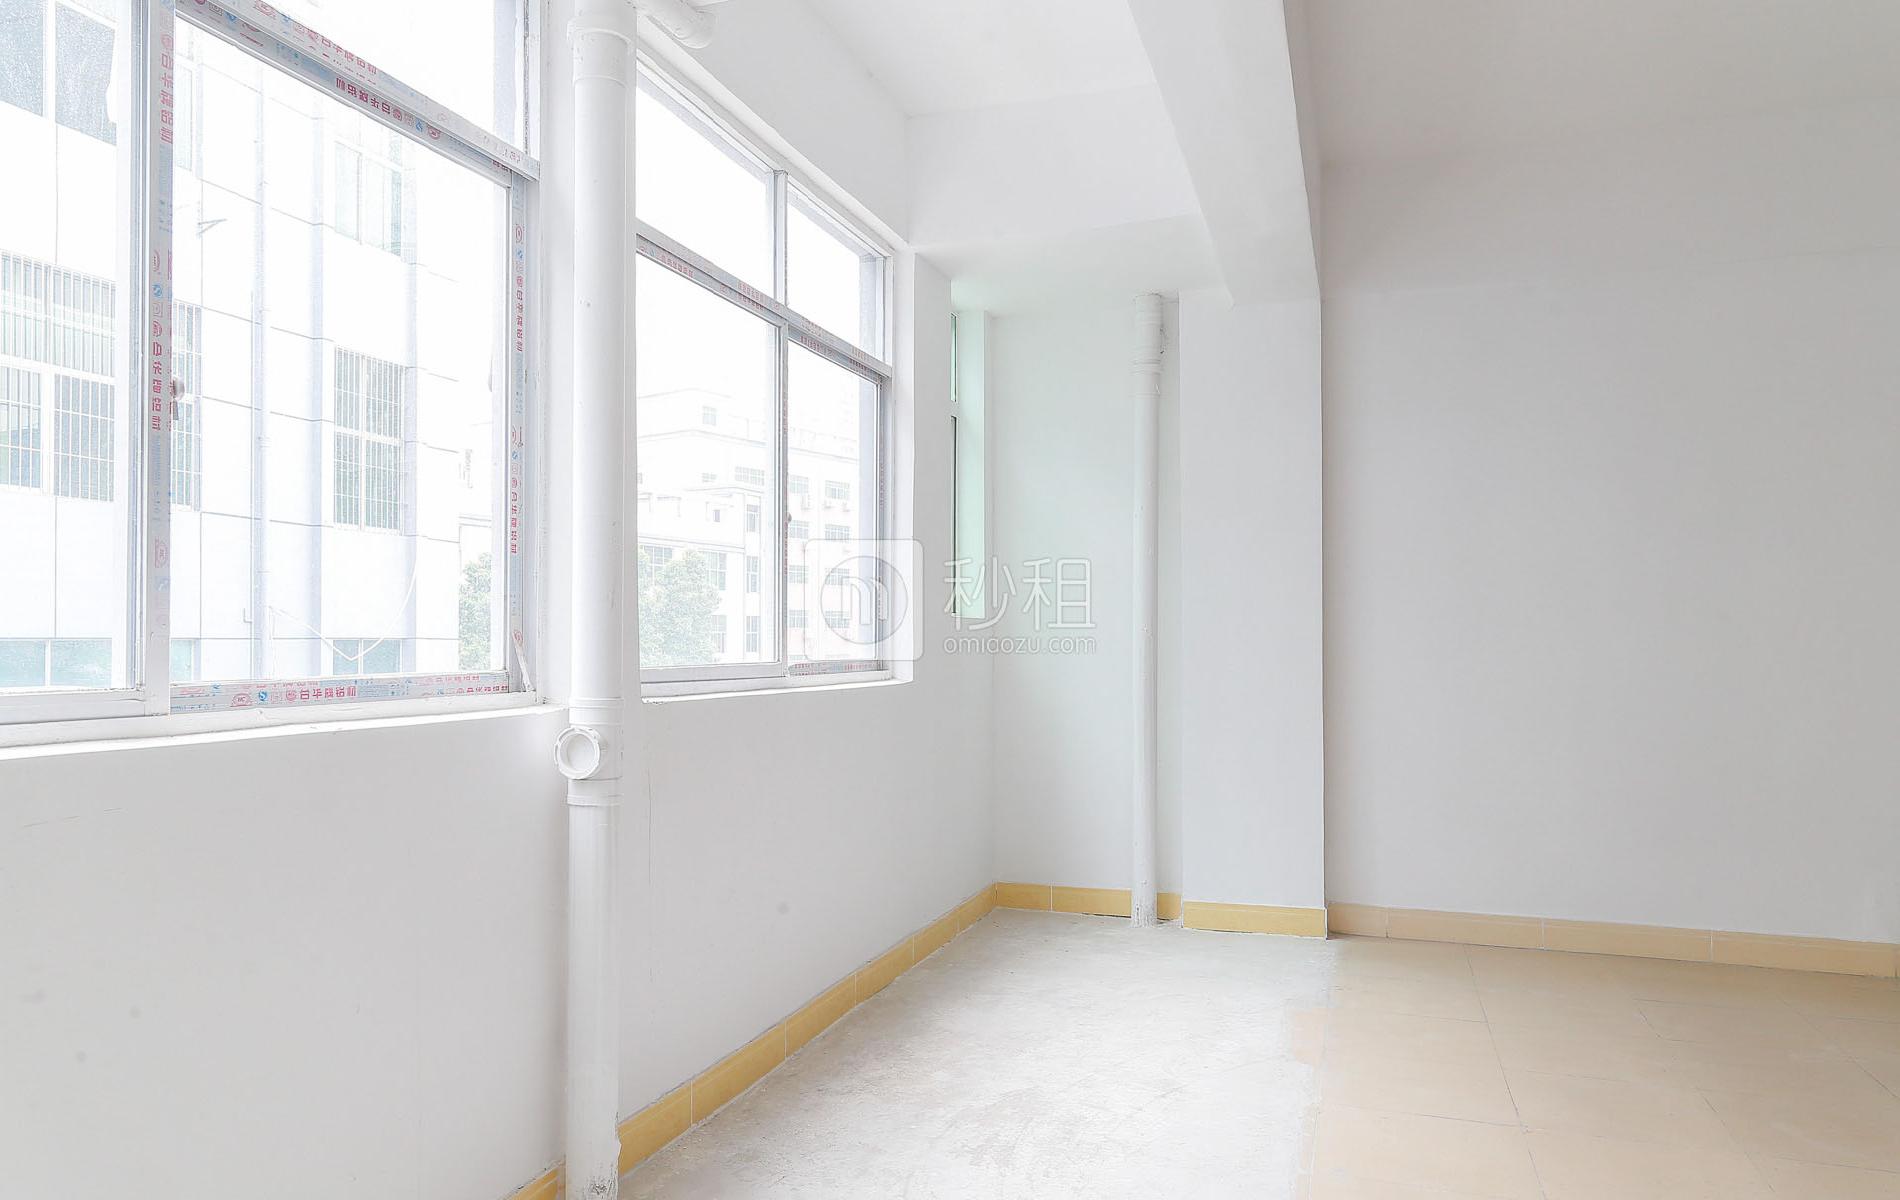 威宇隆工业园写字楼出租56平米简装办公室50元/m².月